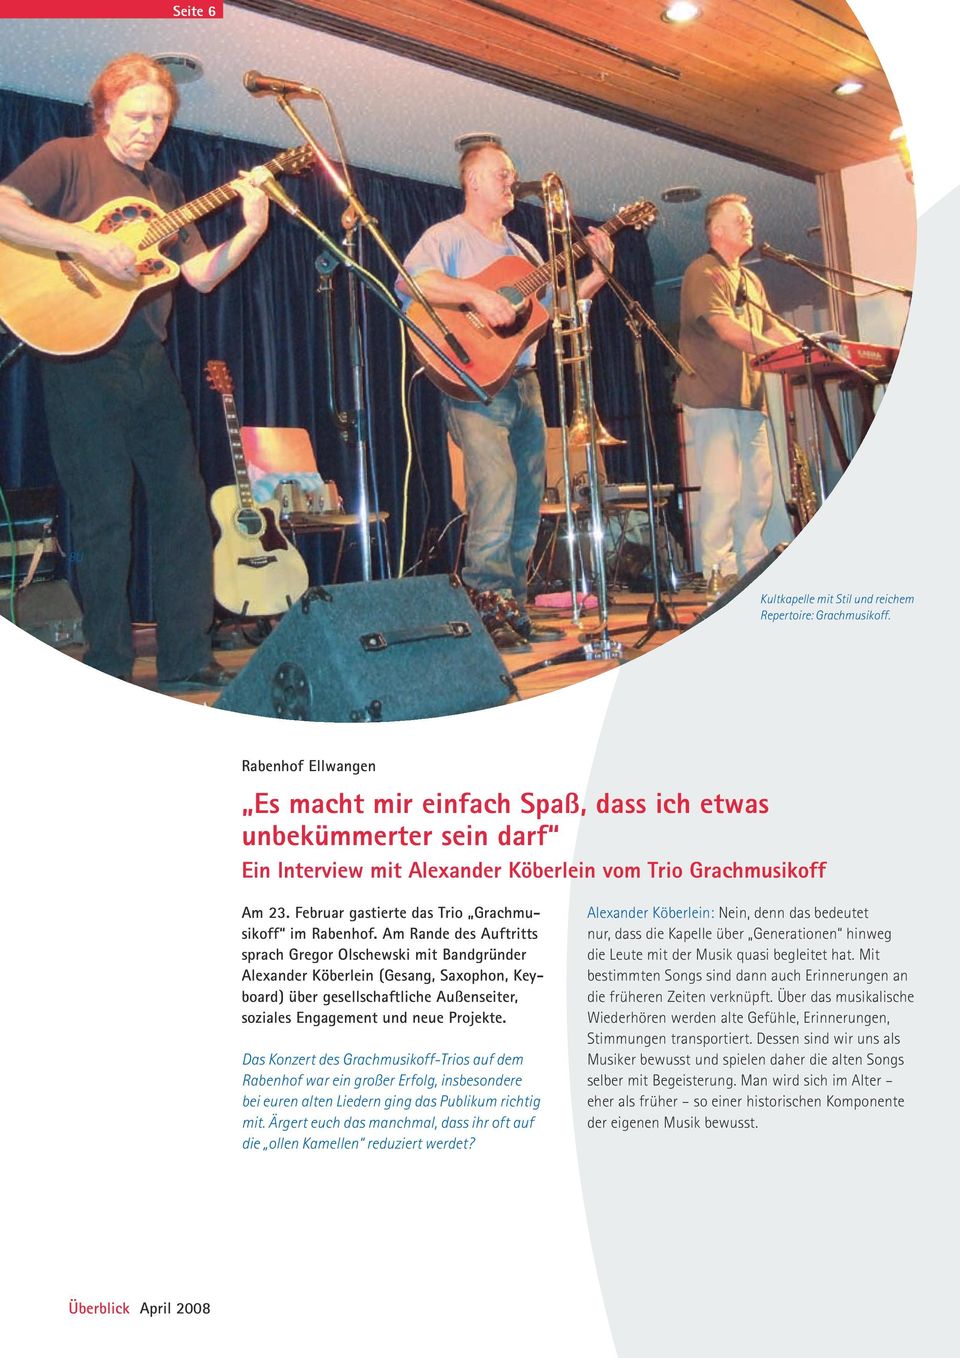 Februar gastierte das Trio Grachmusikoff im Rabenhof.